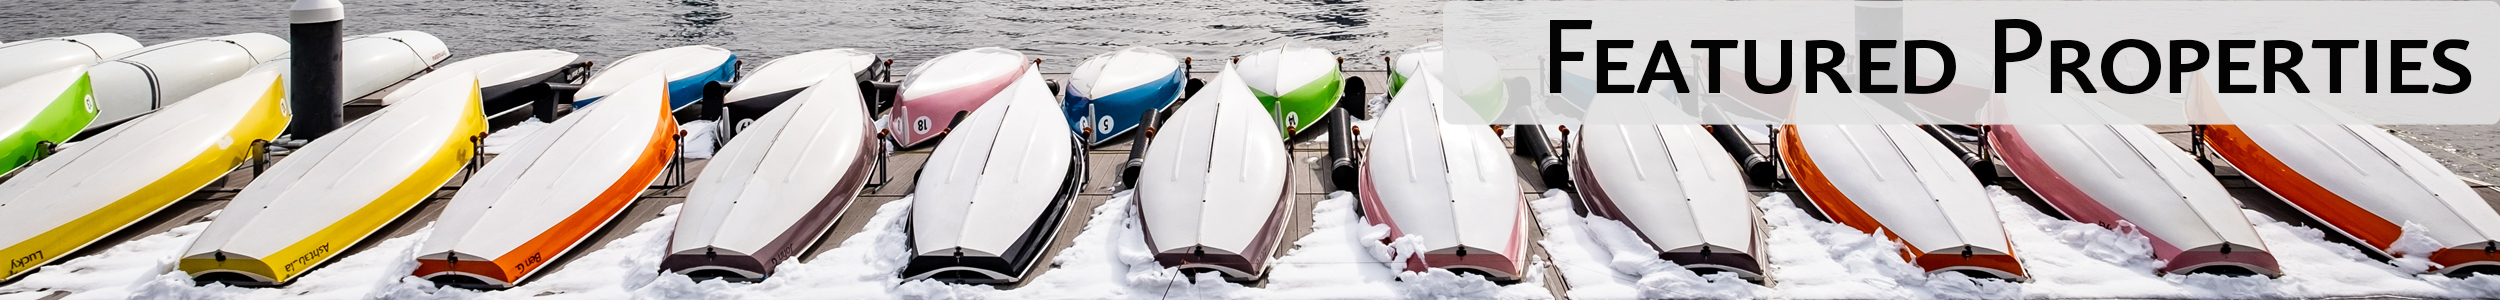 Snowy Boats on Boston Harbor